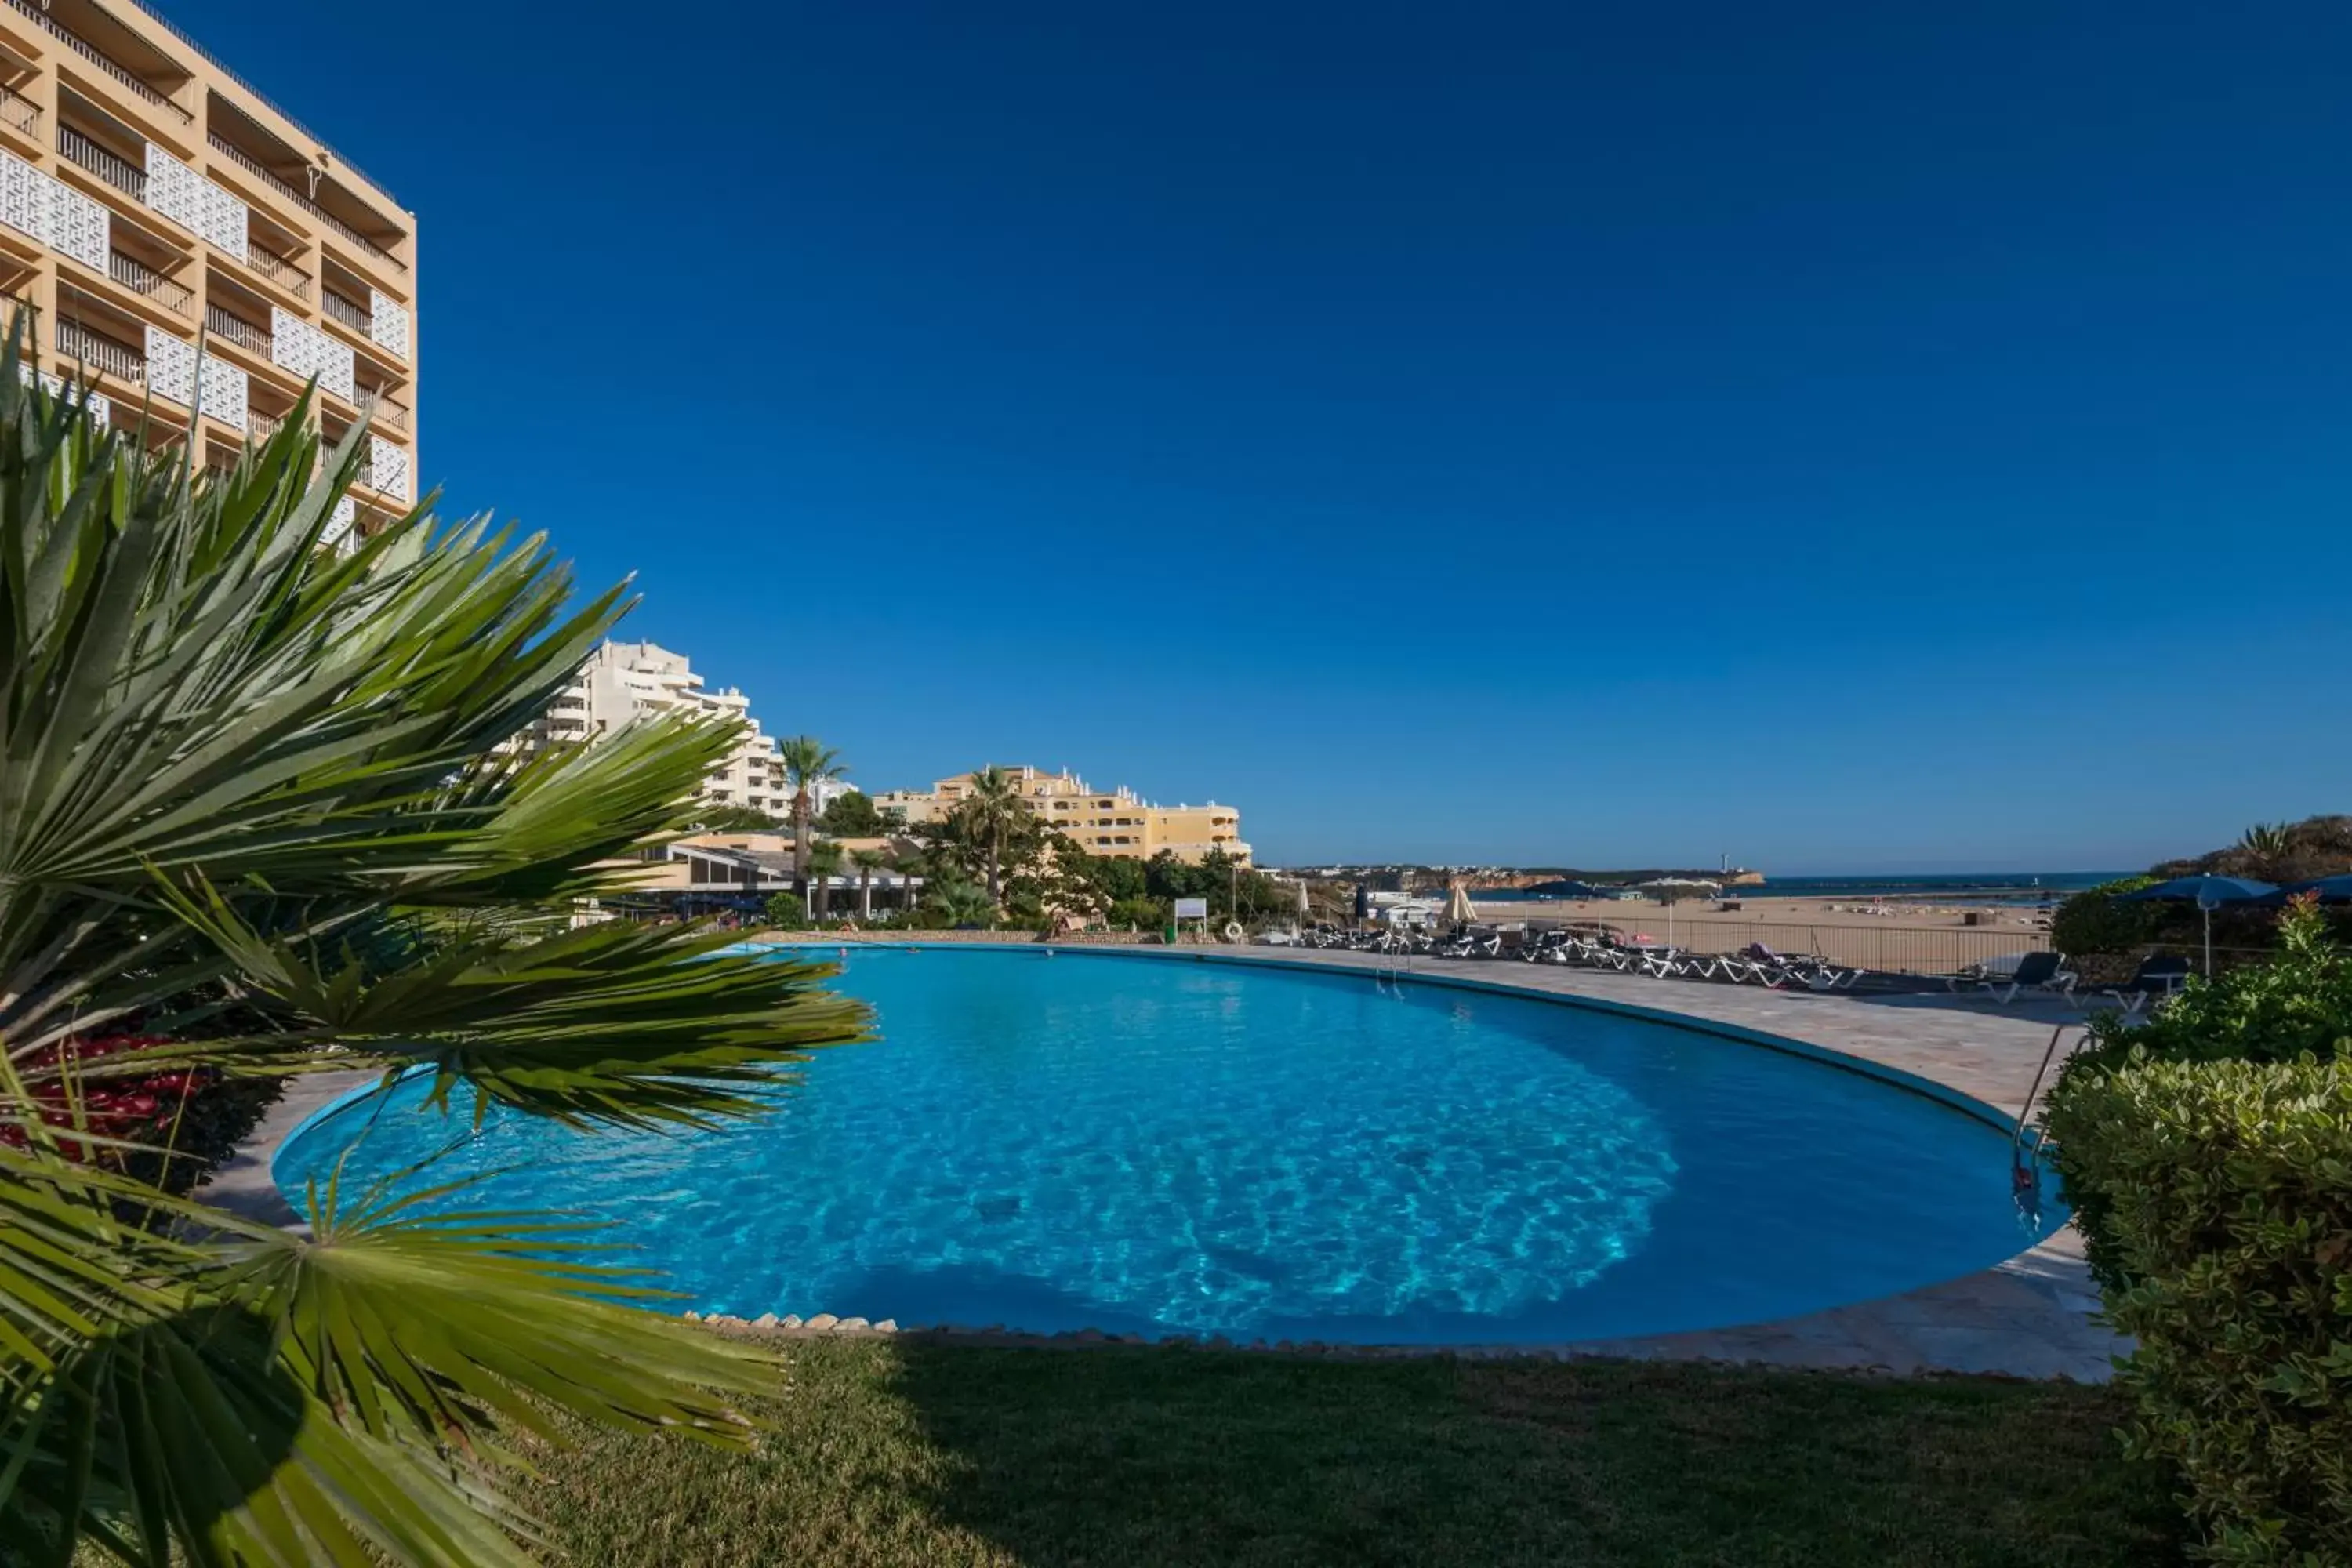 Swimming Pool in Algarve Casino Hotel